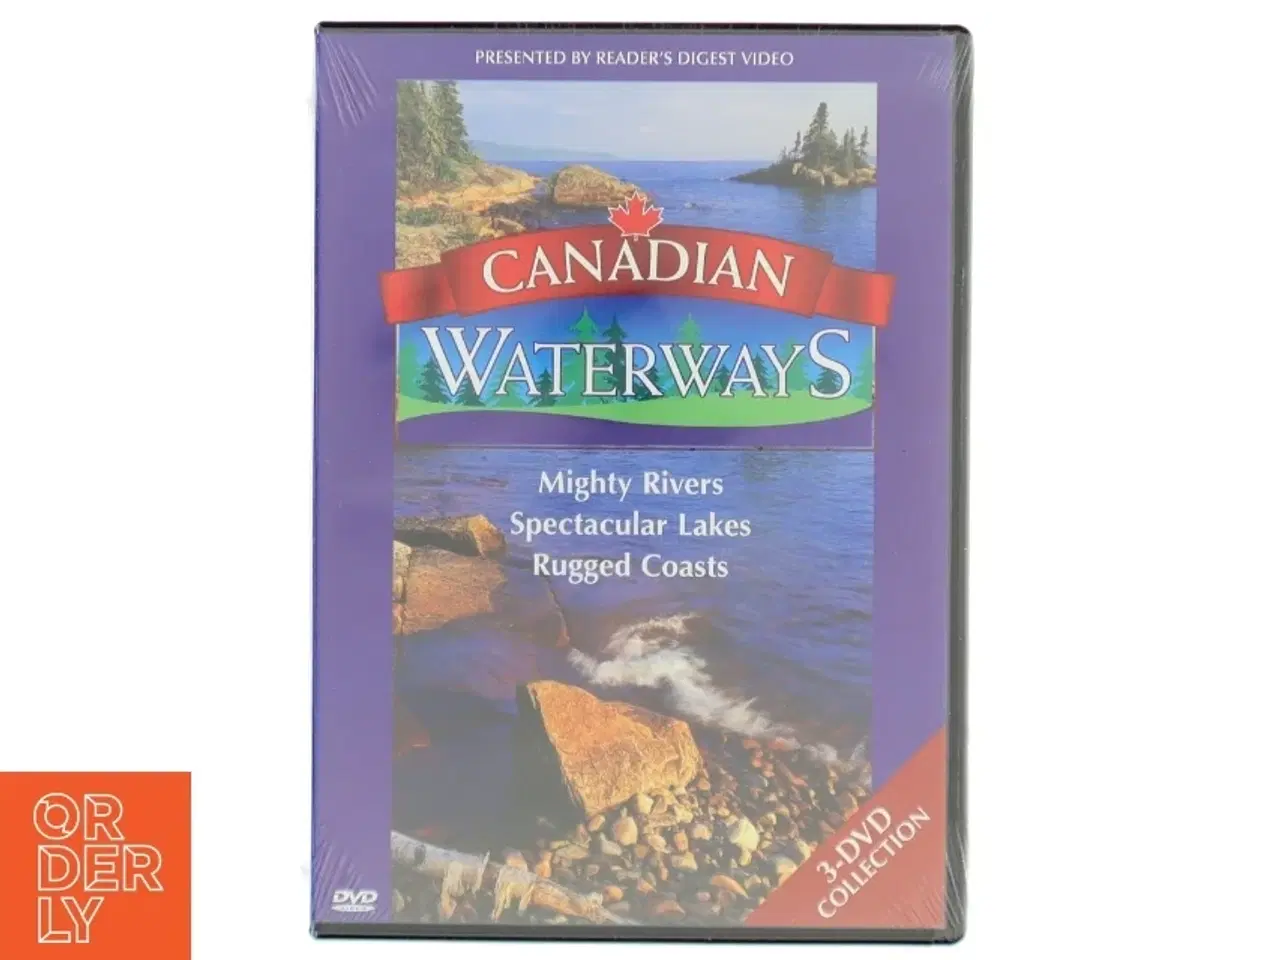 Billede 1 - DVD-sæt med canadiske vandveje fra Reader's Digest